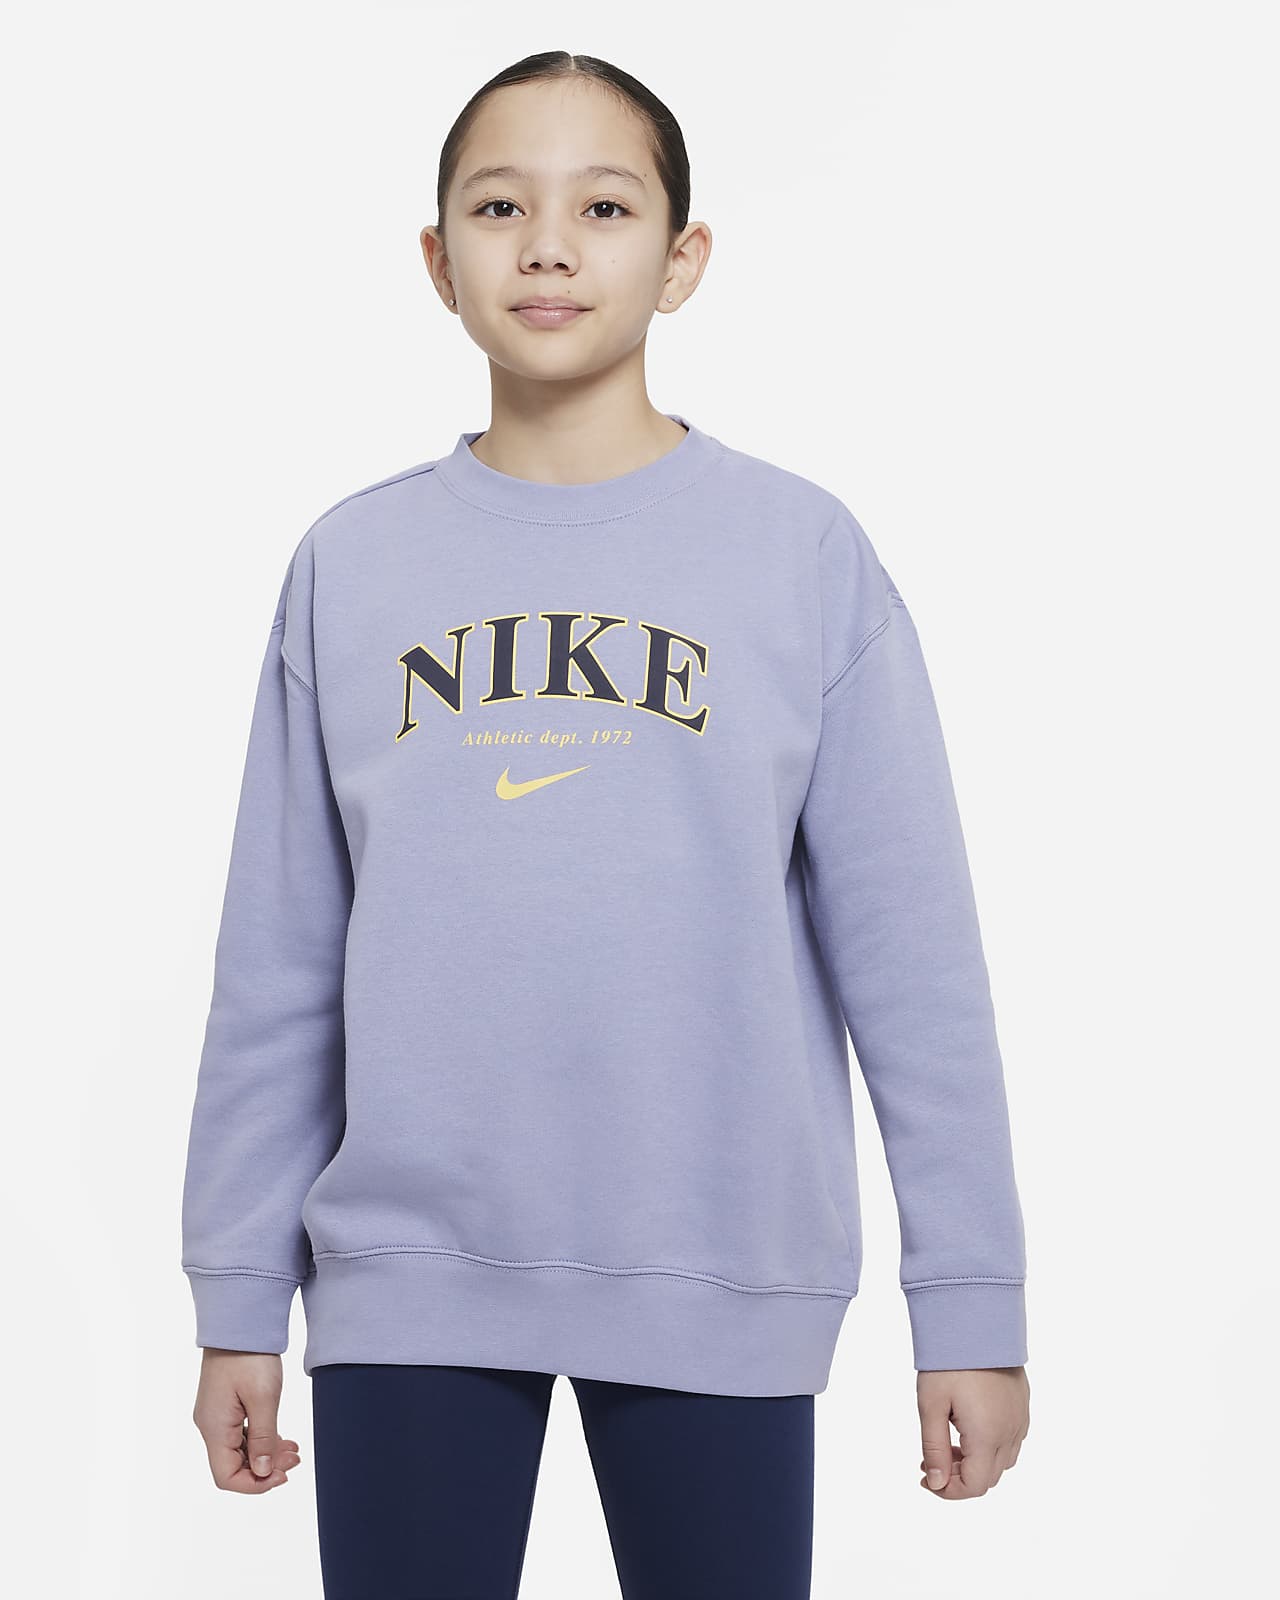 Overdimensioneret Nike Sportswear-sweatshirt til større børn (piger).